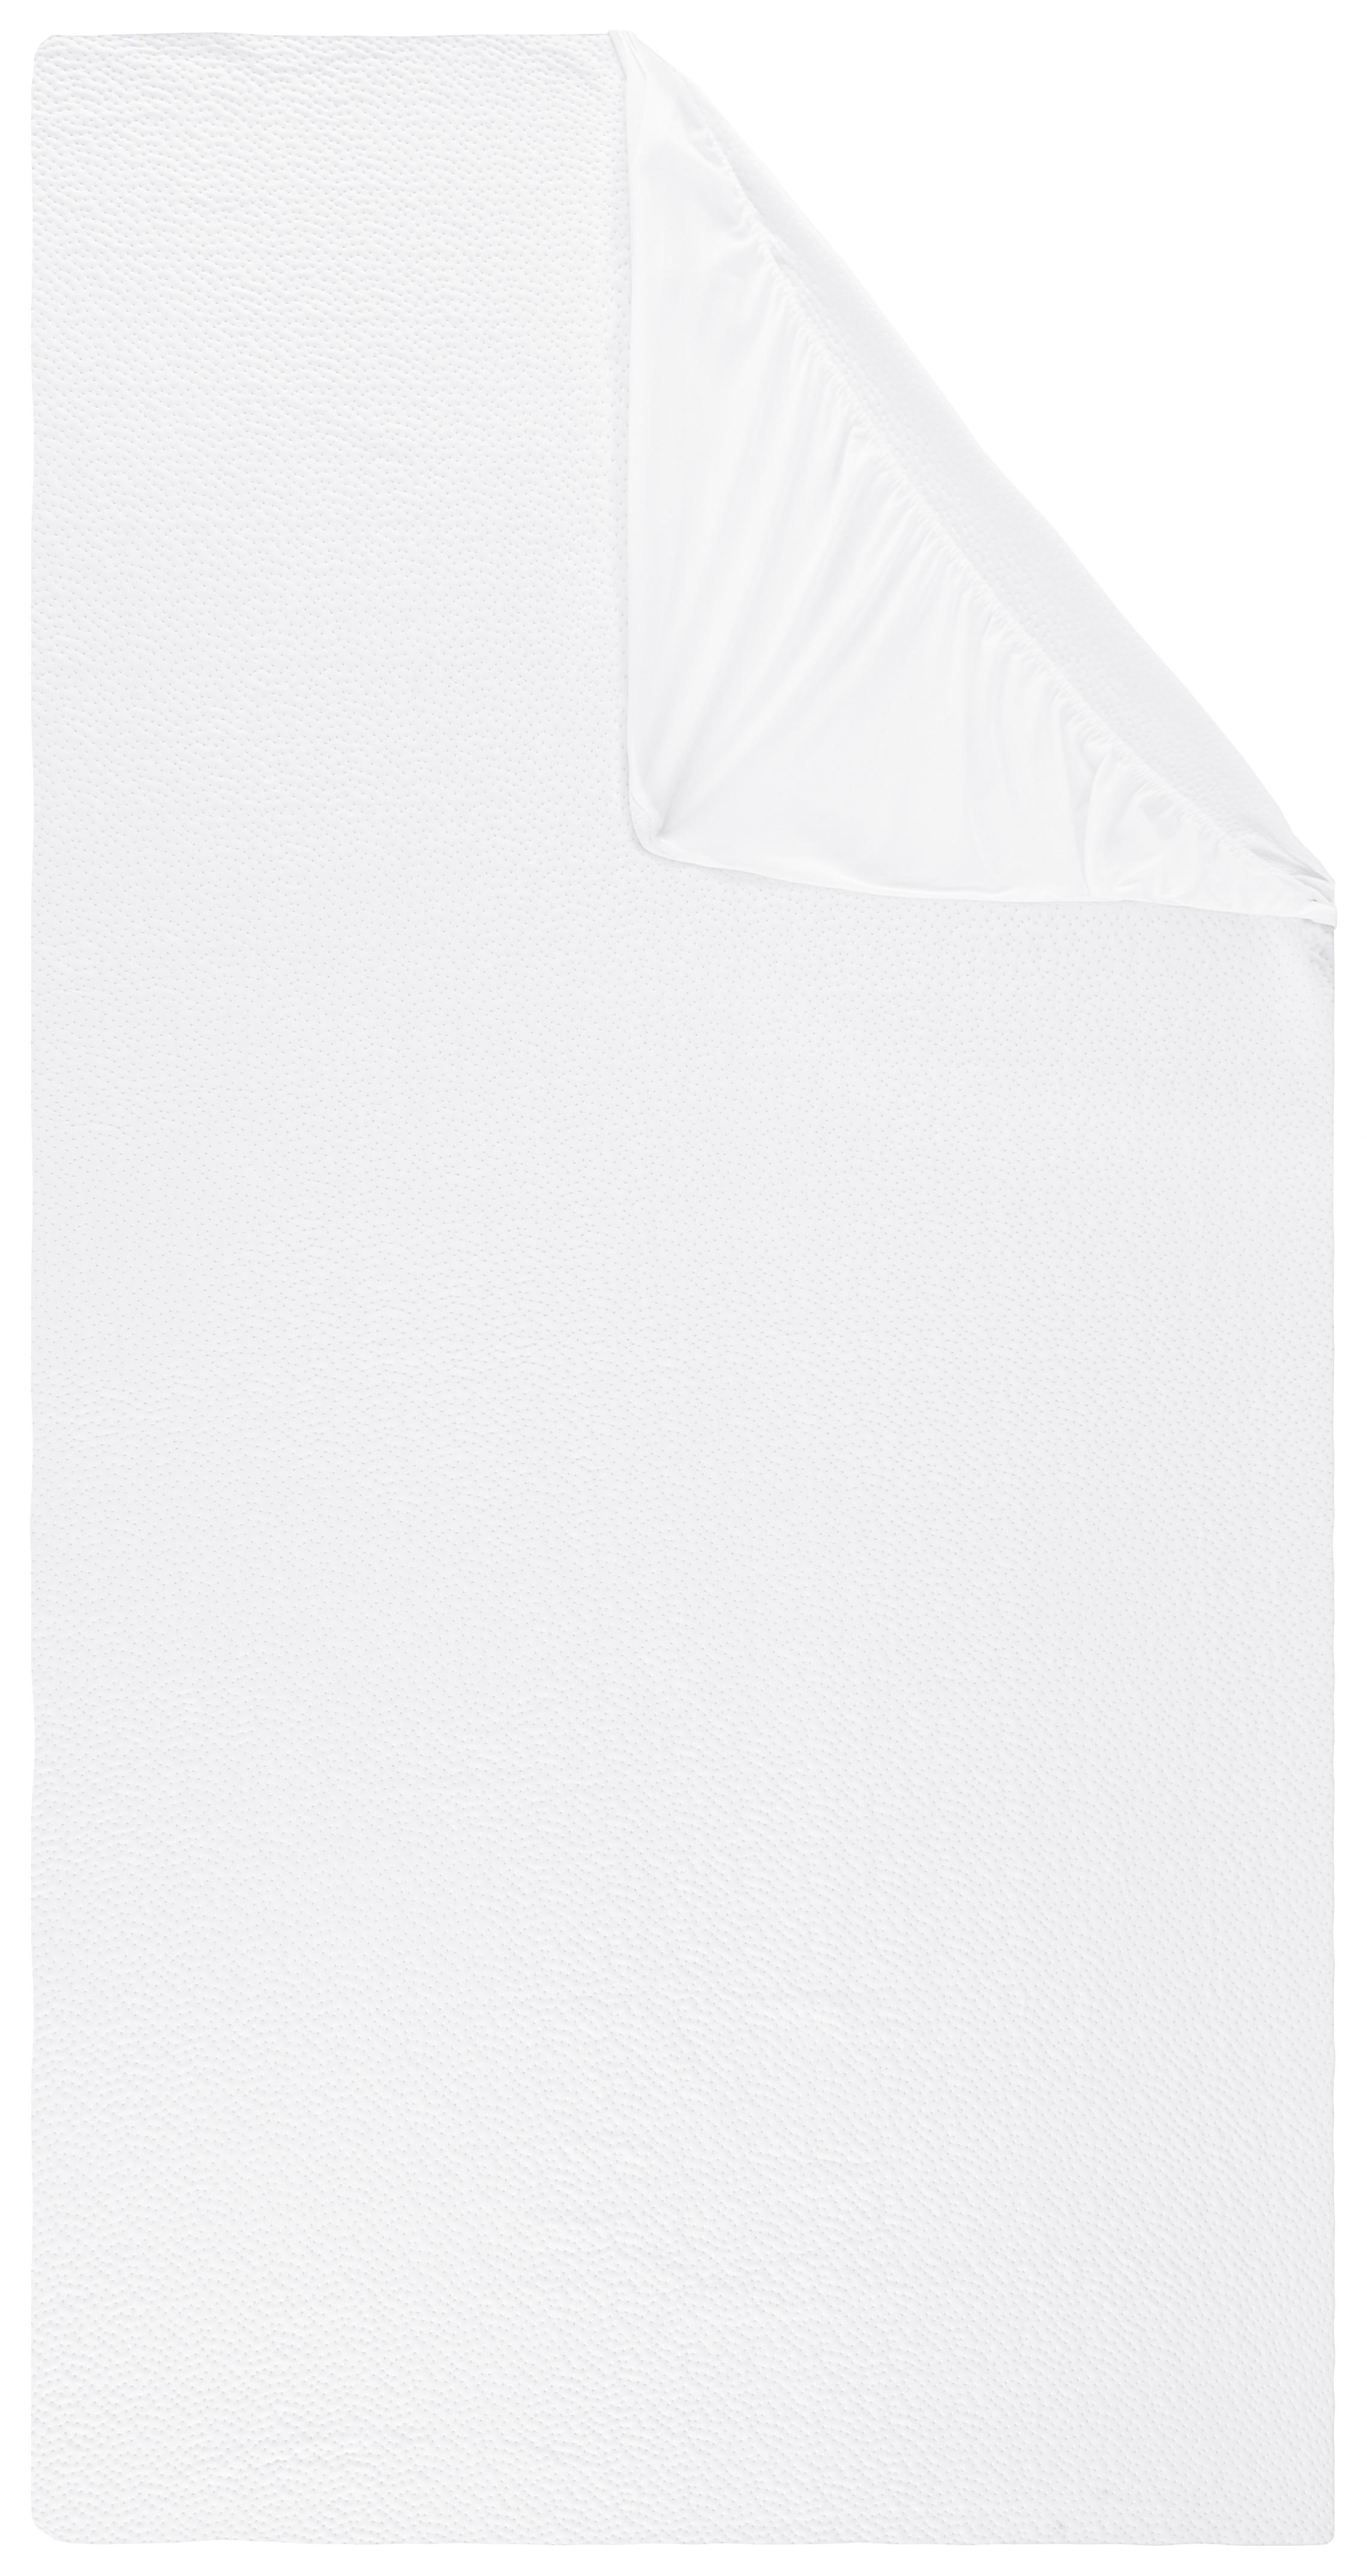 Chránič Matrace Cool Me, 200/90/25cm, Bílá - bílá, textil (200/90/25cm) - Modern Living